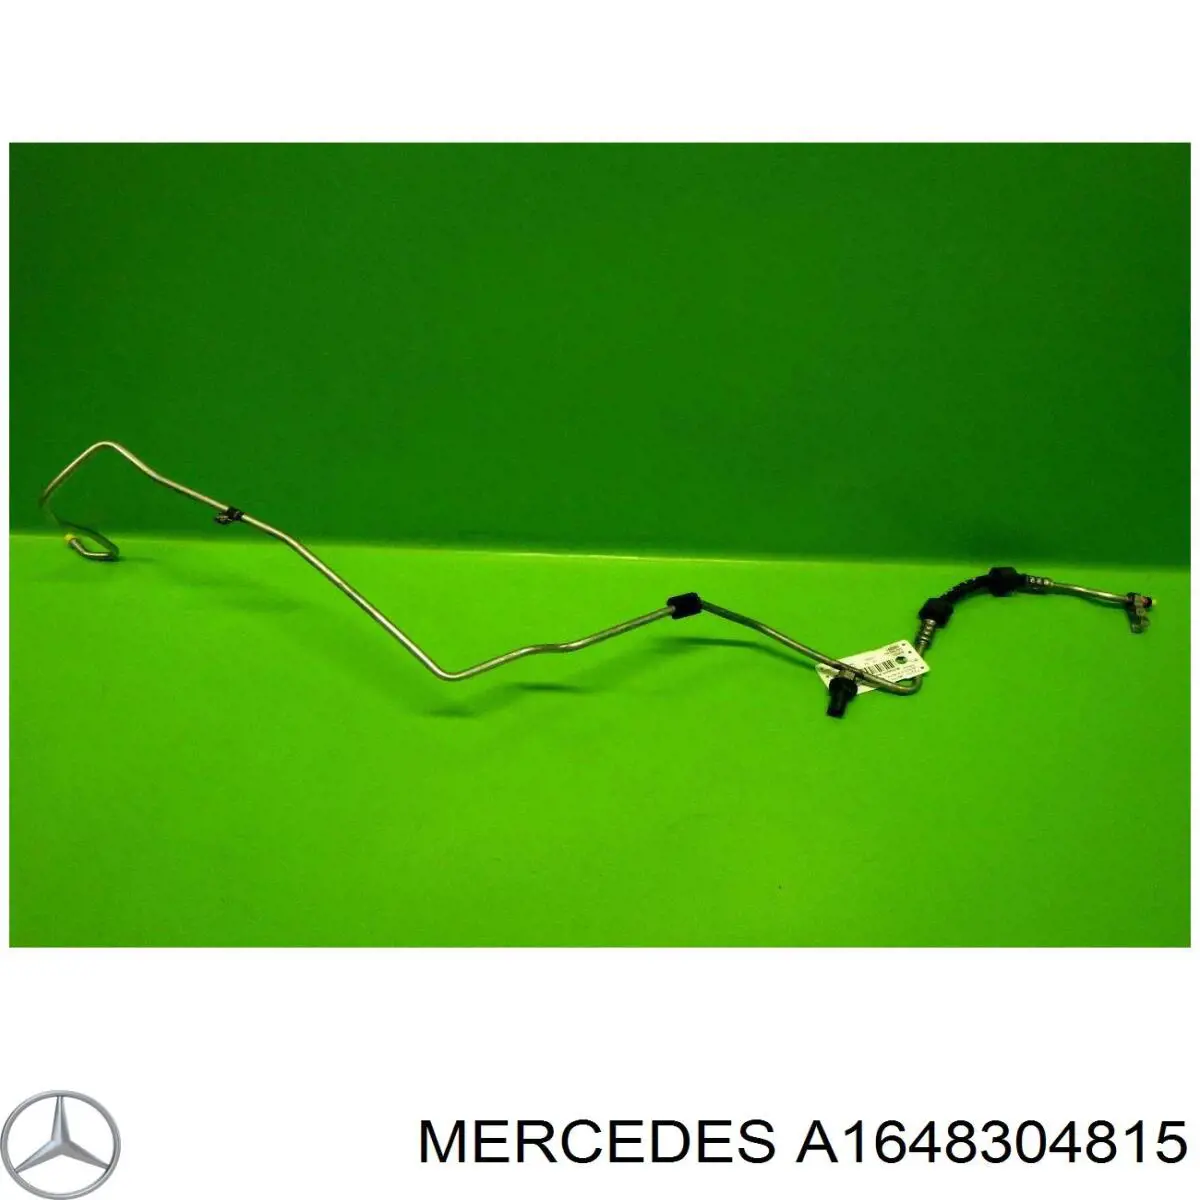 A1648304815 Mercedes mangueira de aparelho de ar condicionado, desde o radiador até o vaporizador